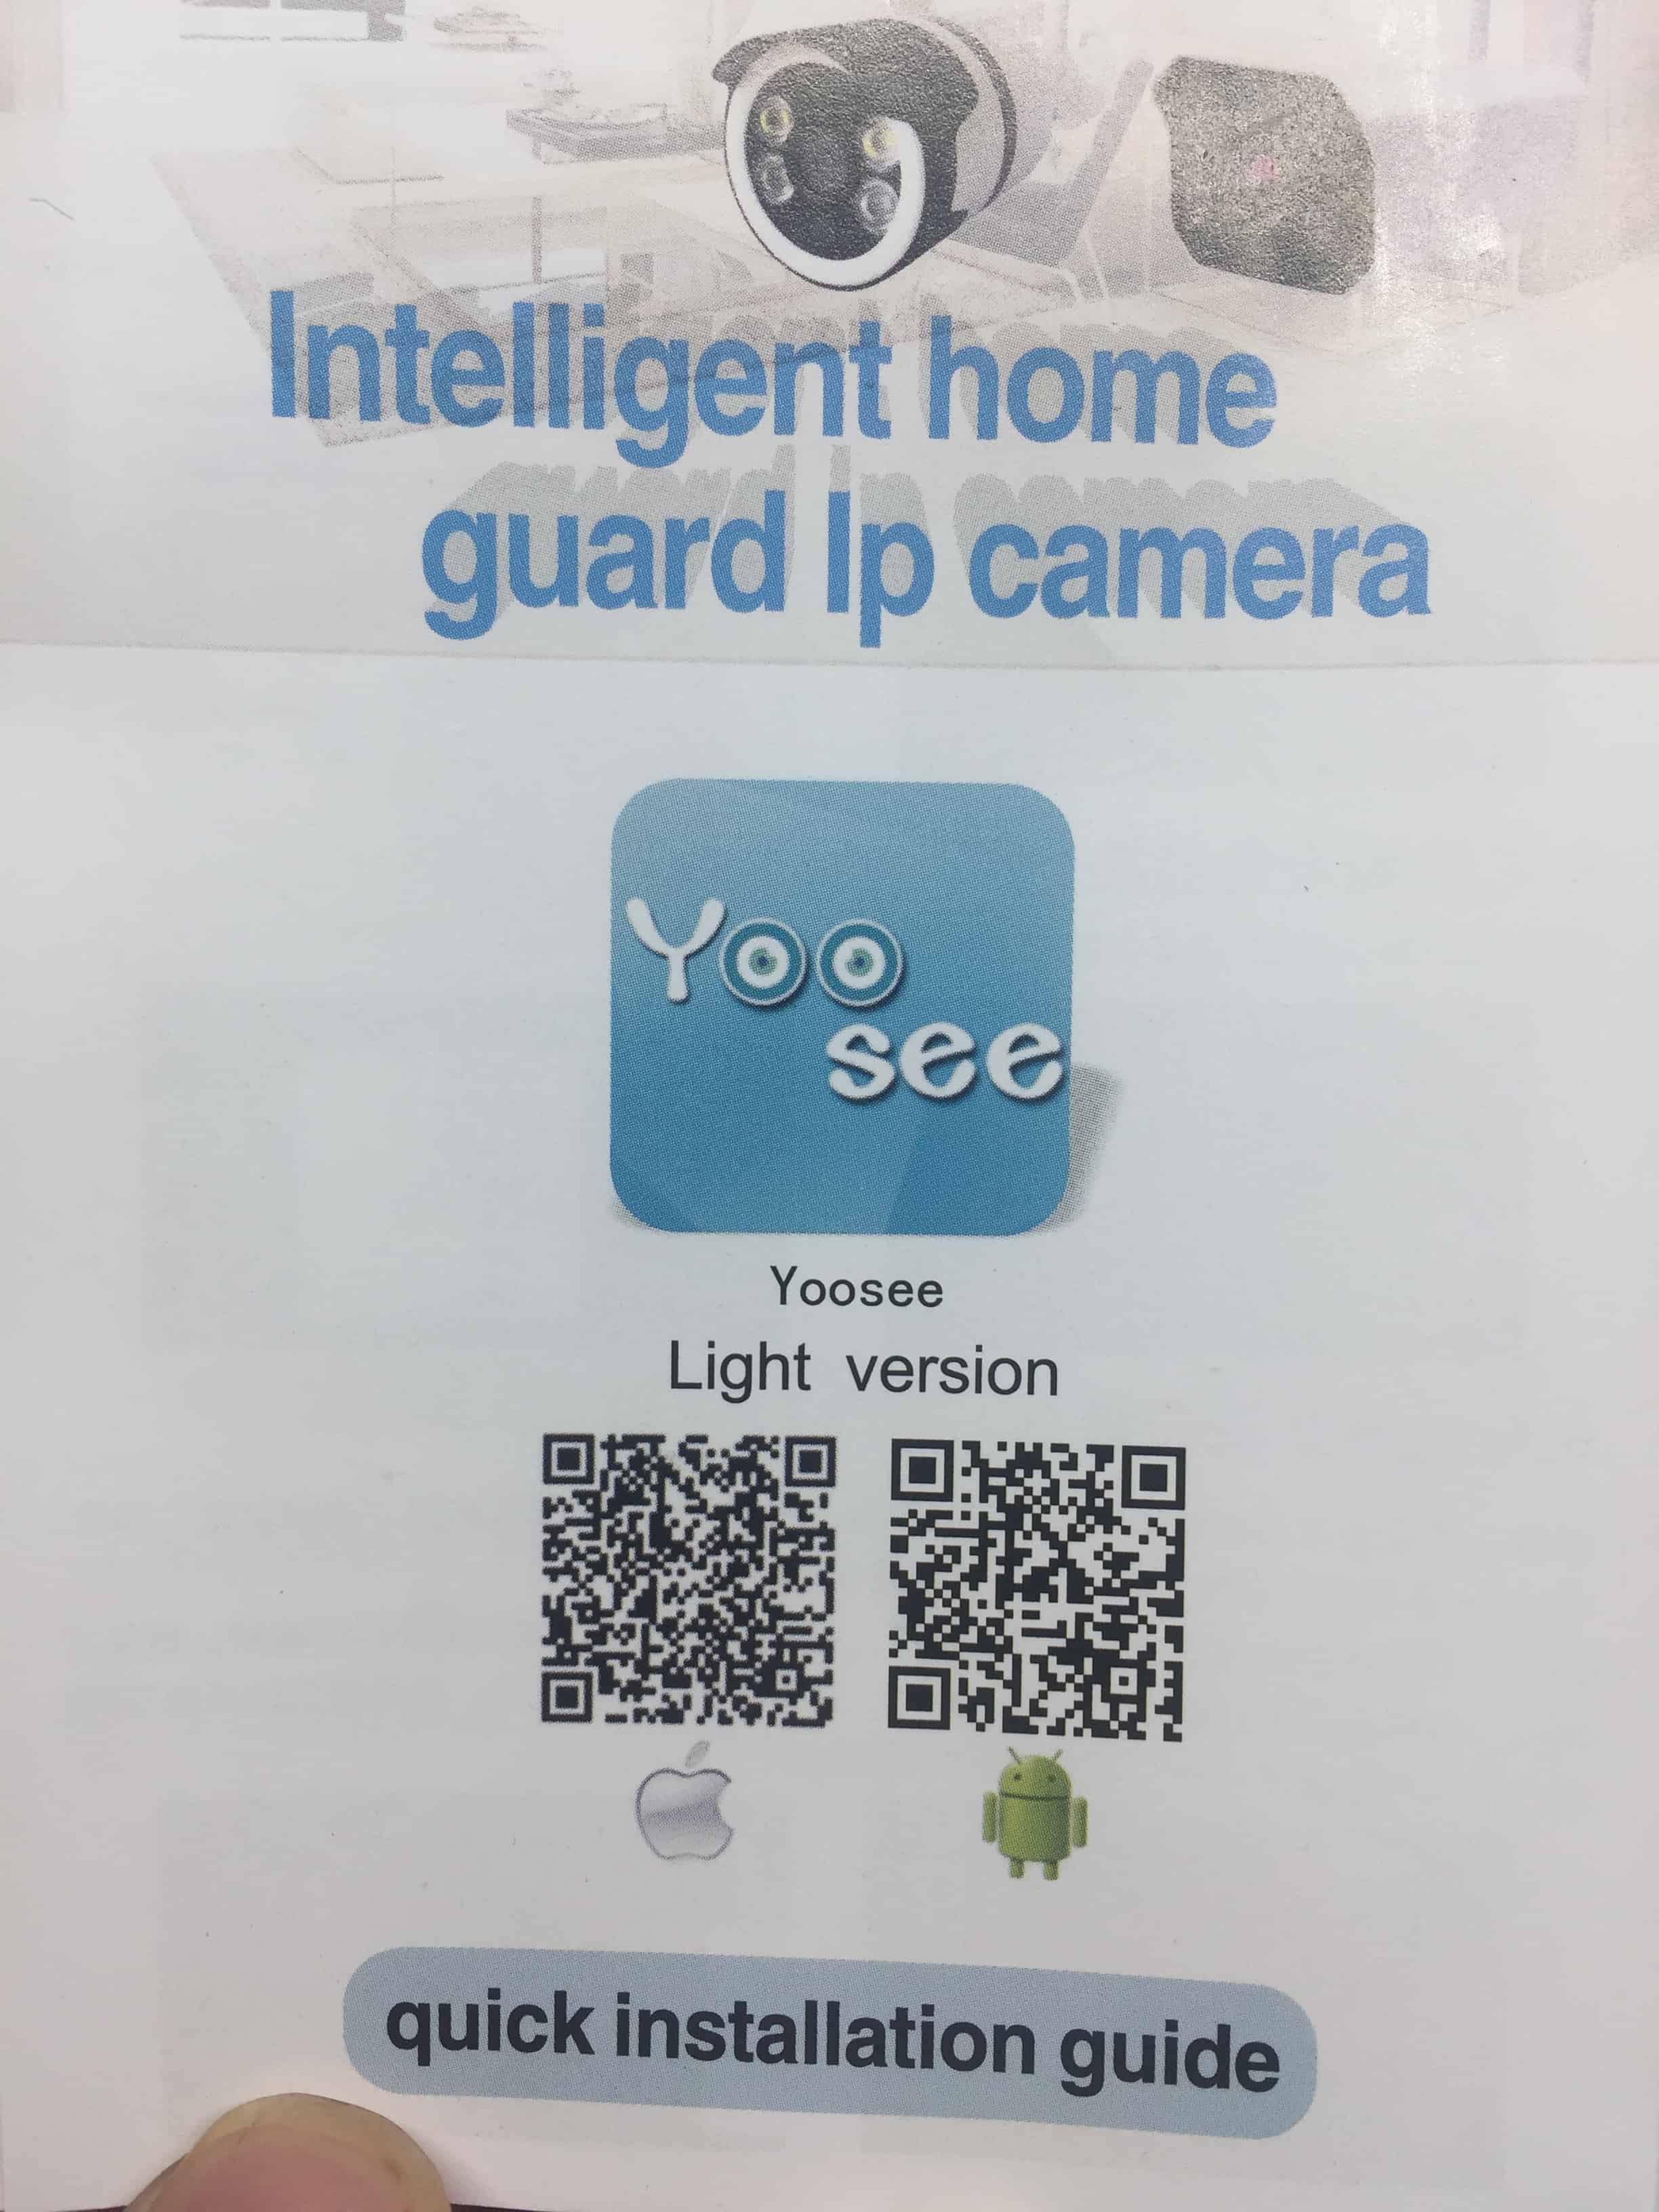 Hướng dẫn cài đặt Camera Yoosee với điện thoại 2019 chi tiết qua hình ảnh và video 1